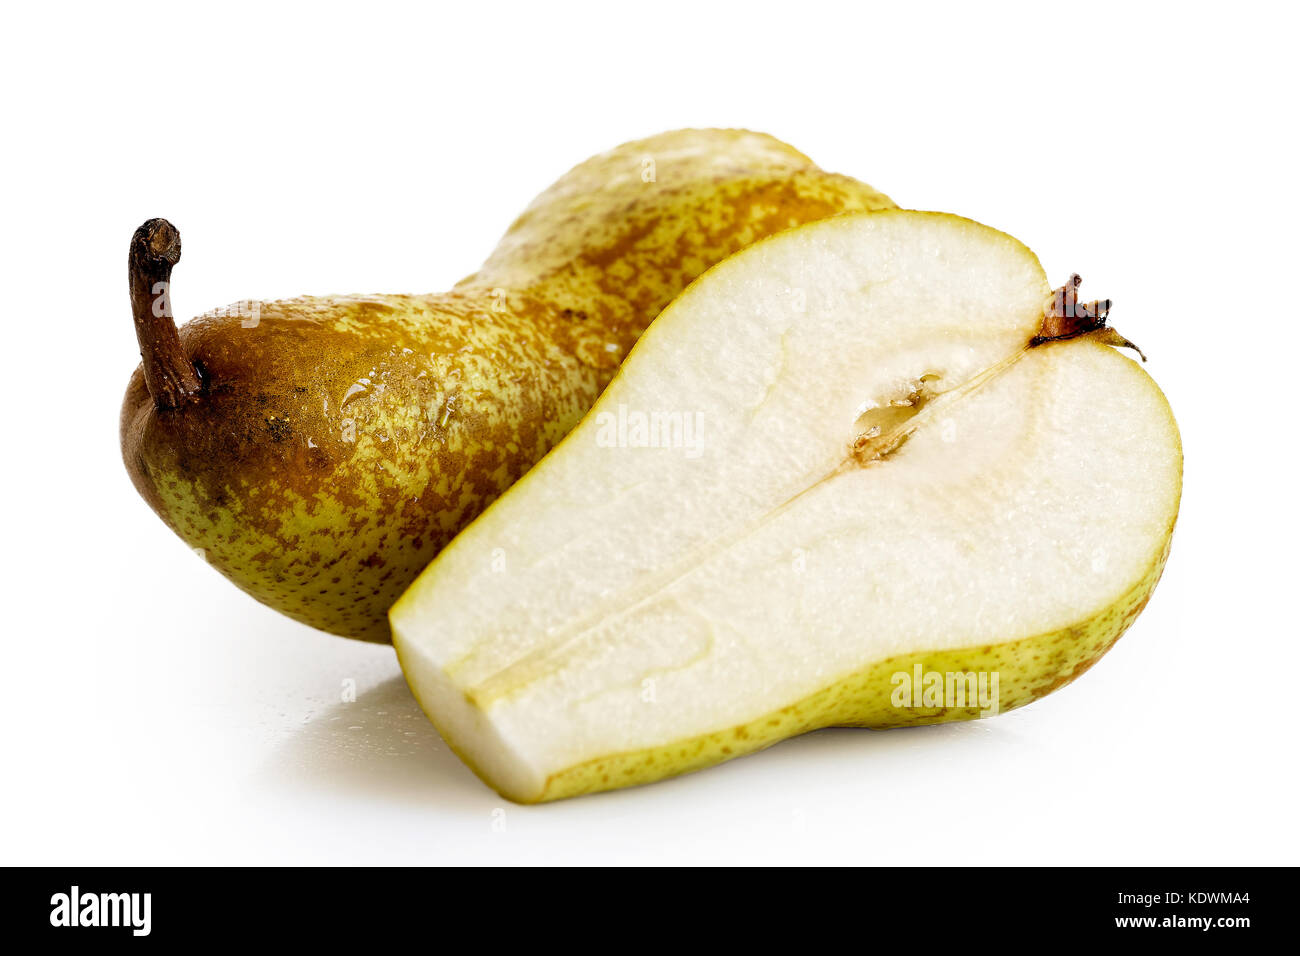 Unico abate fetel pera accanto a una metà di pera isolato su bianco. Foto Stock